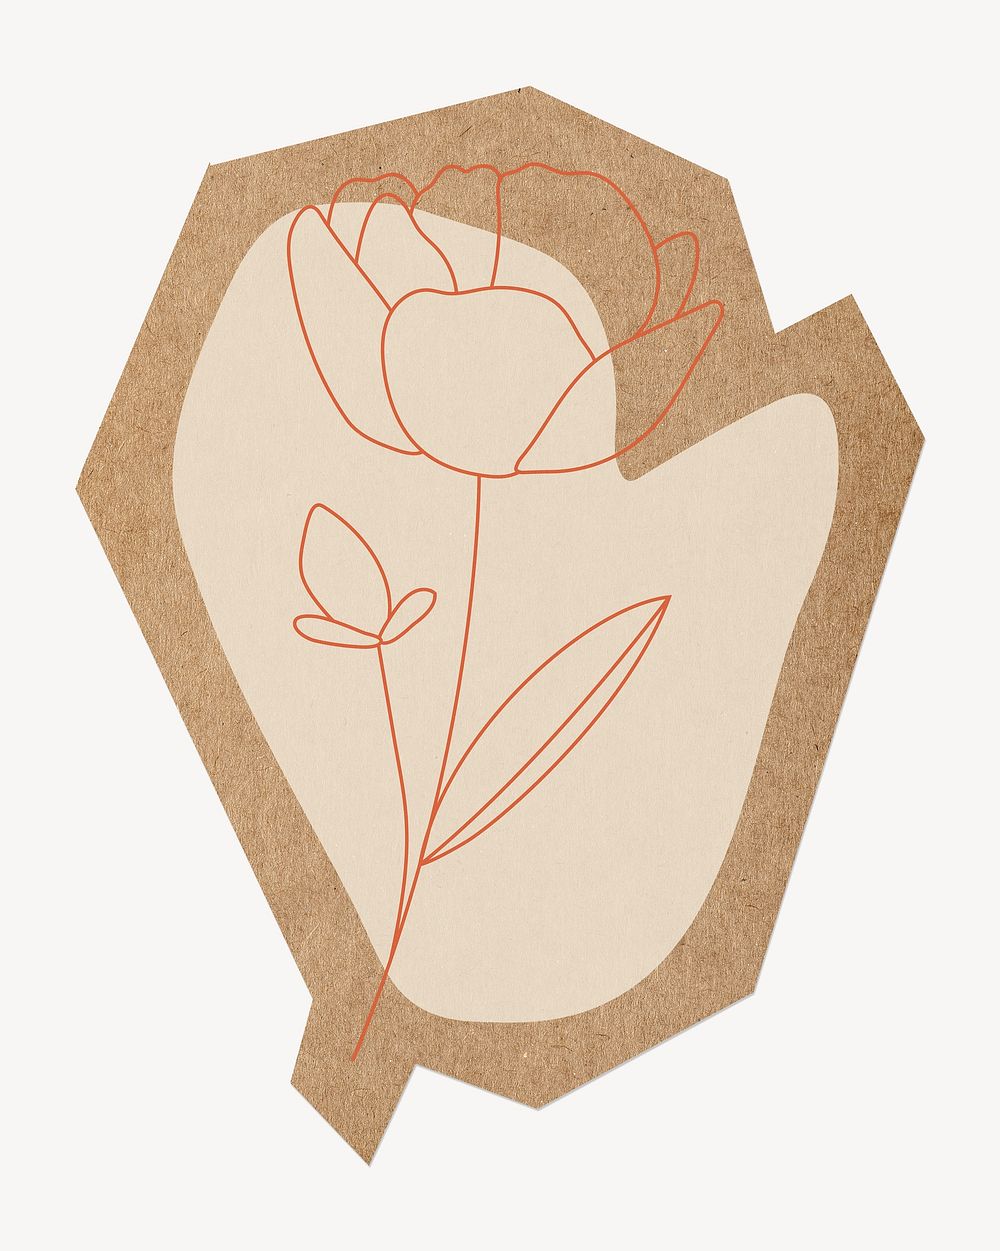 Flower line art, cut out paper element